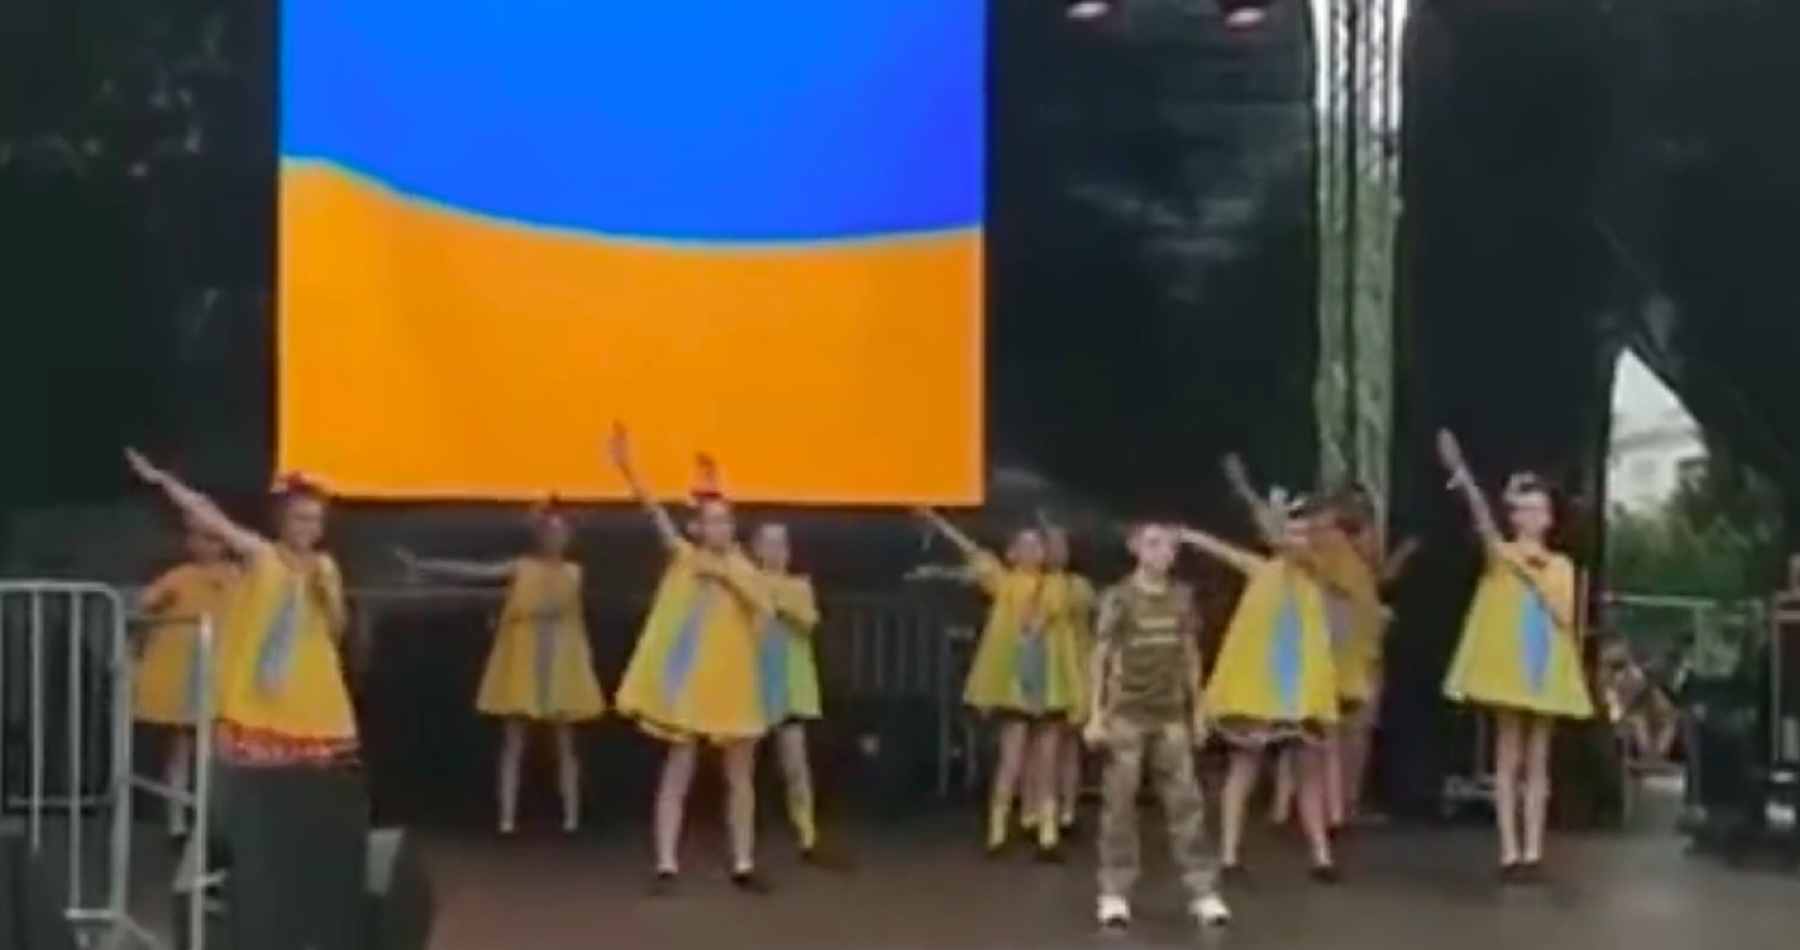 VIDEO: Ukrajinské děti zpívaly neoficiální hymnu Luftwaffe a dívky měly v choreografii během tance dokonce i hajlování! Ve skutečnosti jde o skladbu proletářů a odborářů z NDR, která má původ ve francouzské lidové písni z Bretaně! Skladba je omylem na Ukrajině považována za píseň německých letců Luftwaffe, protože její pochodový rytmus se podobá německým flétnovým maršům! 